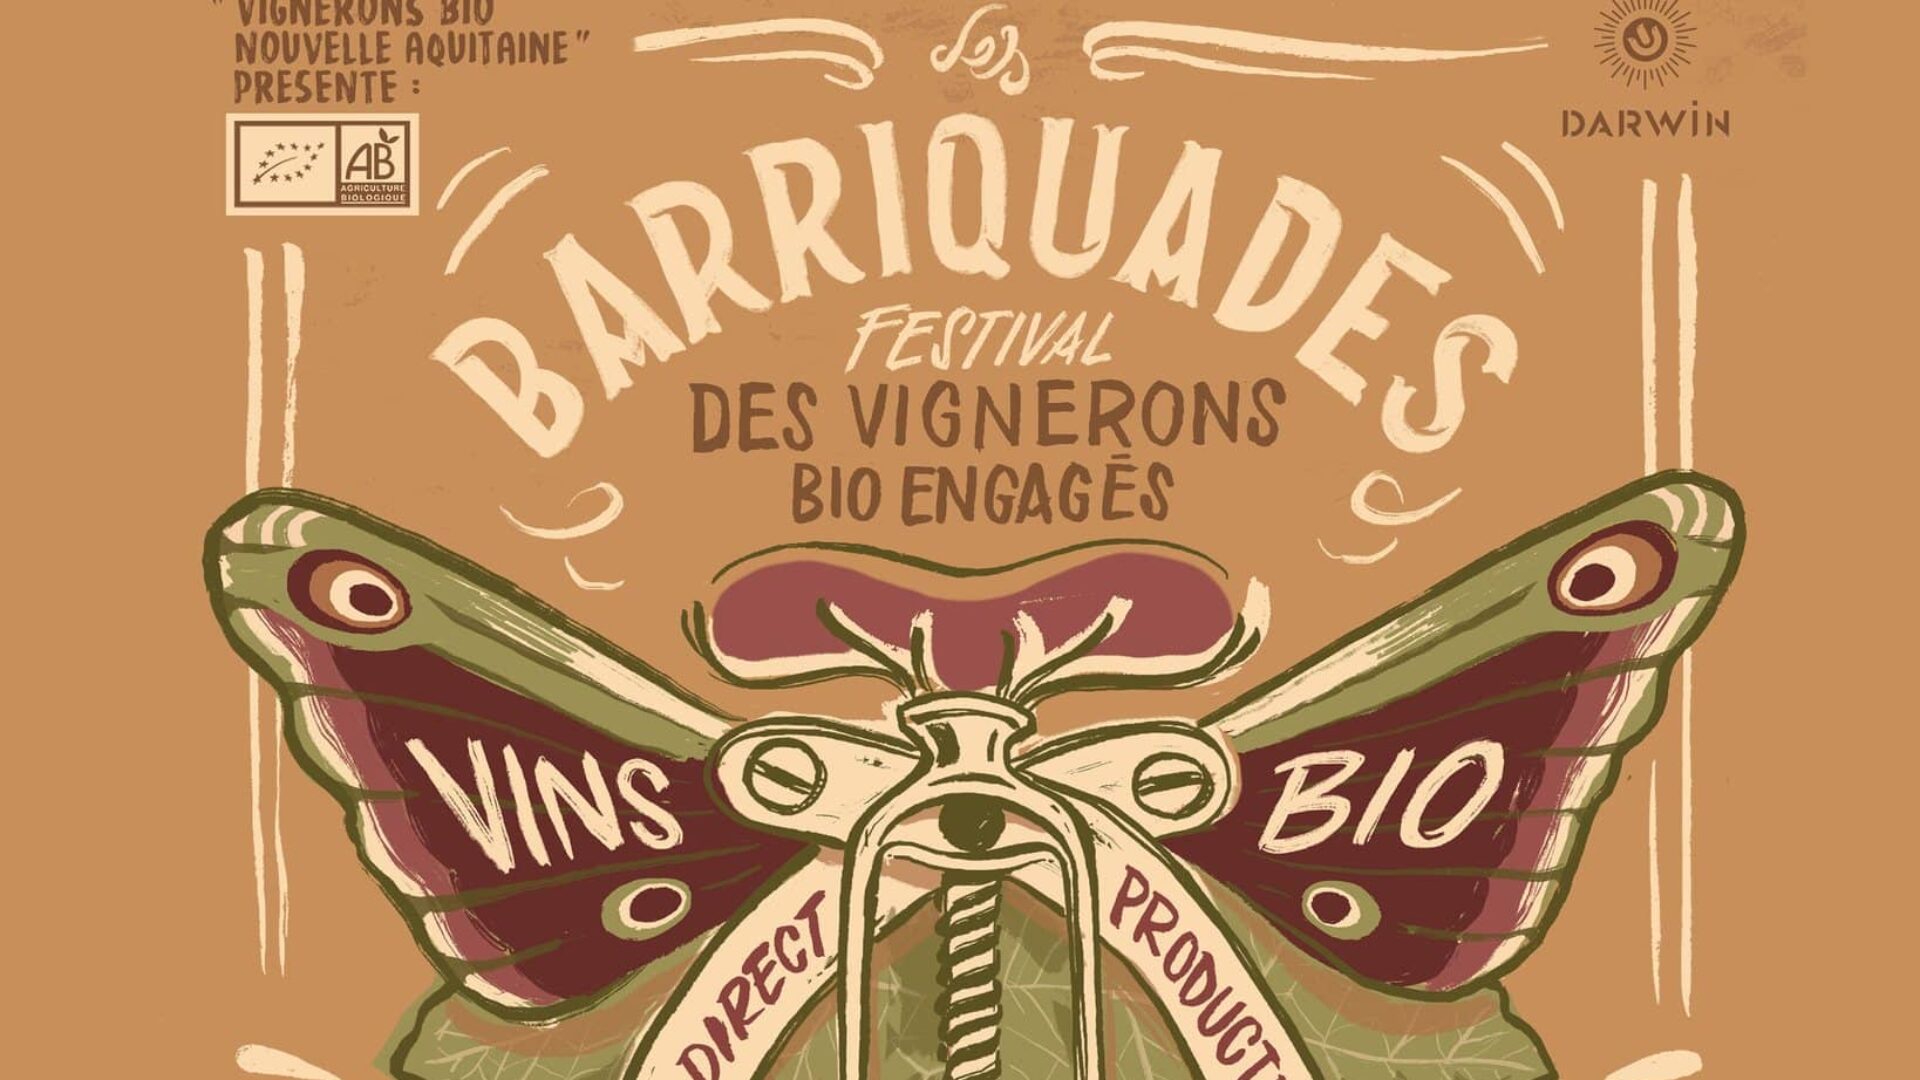 Les Barriquades : festival des vignerons Bio engagés